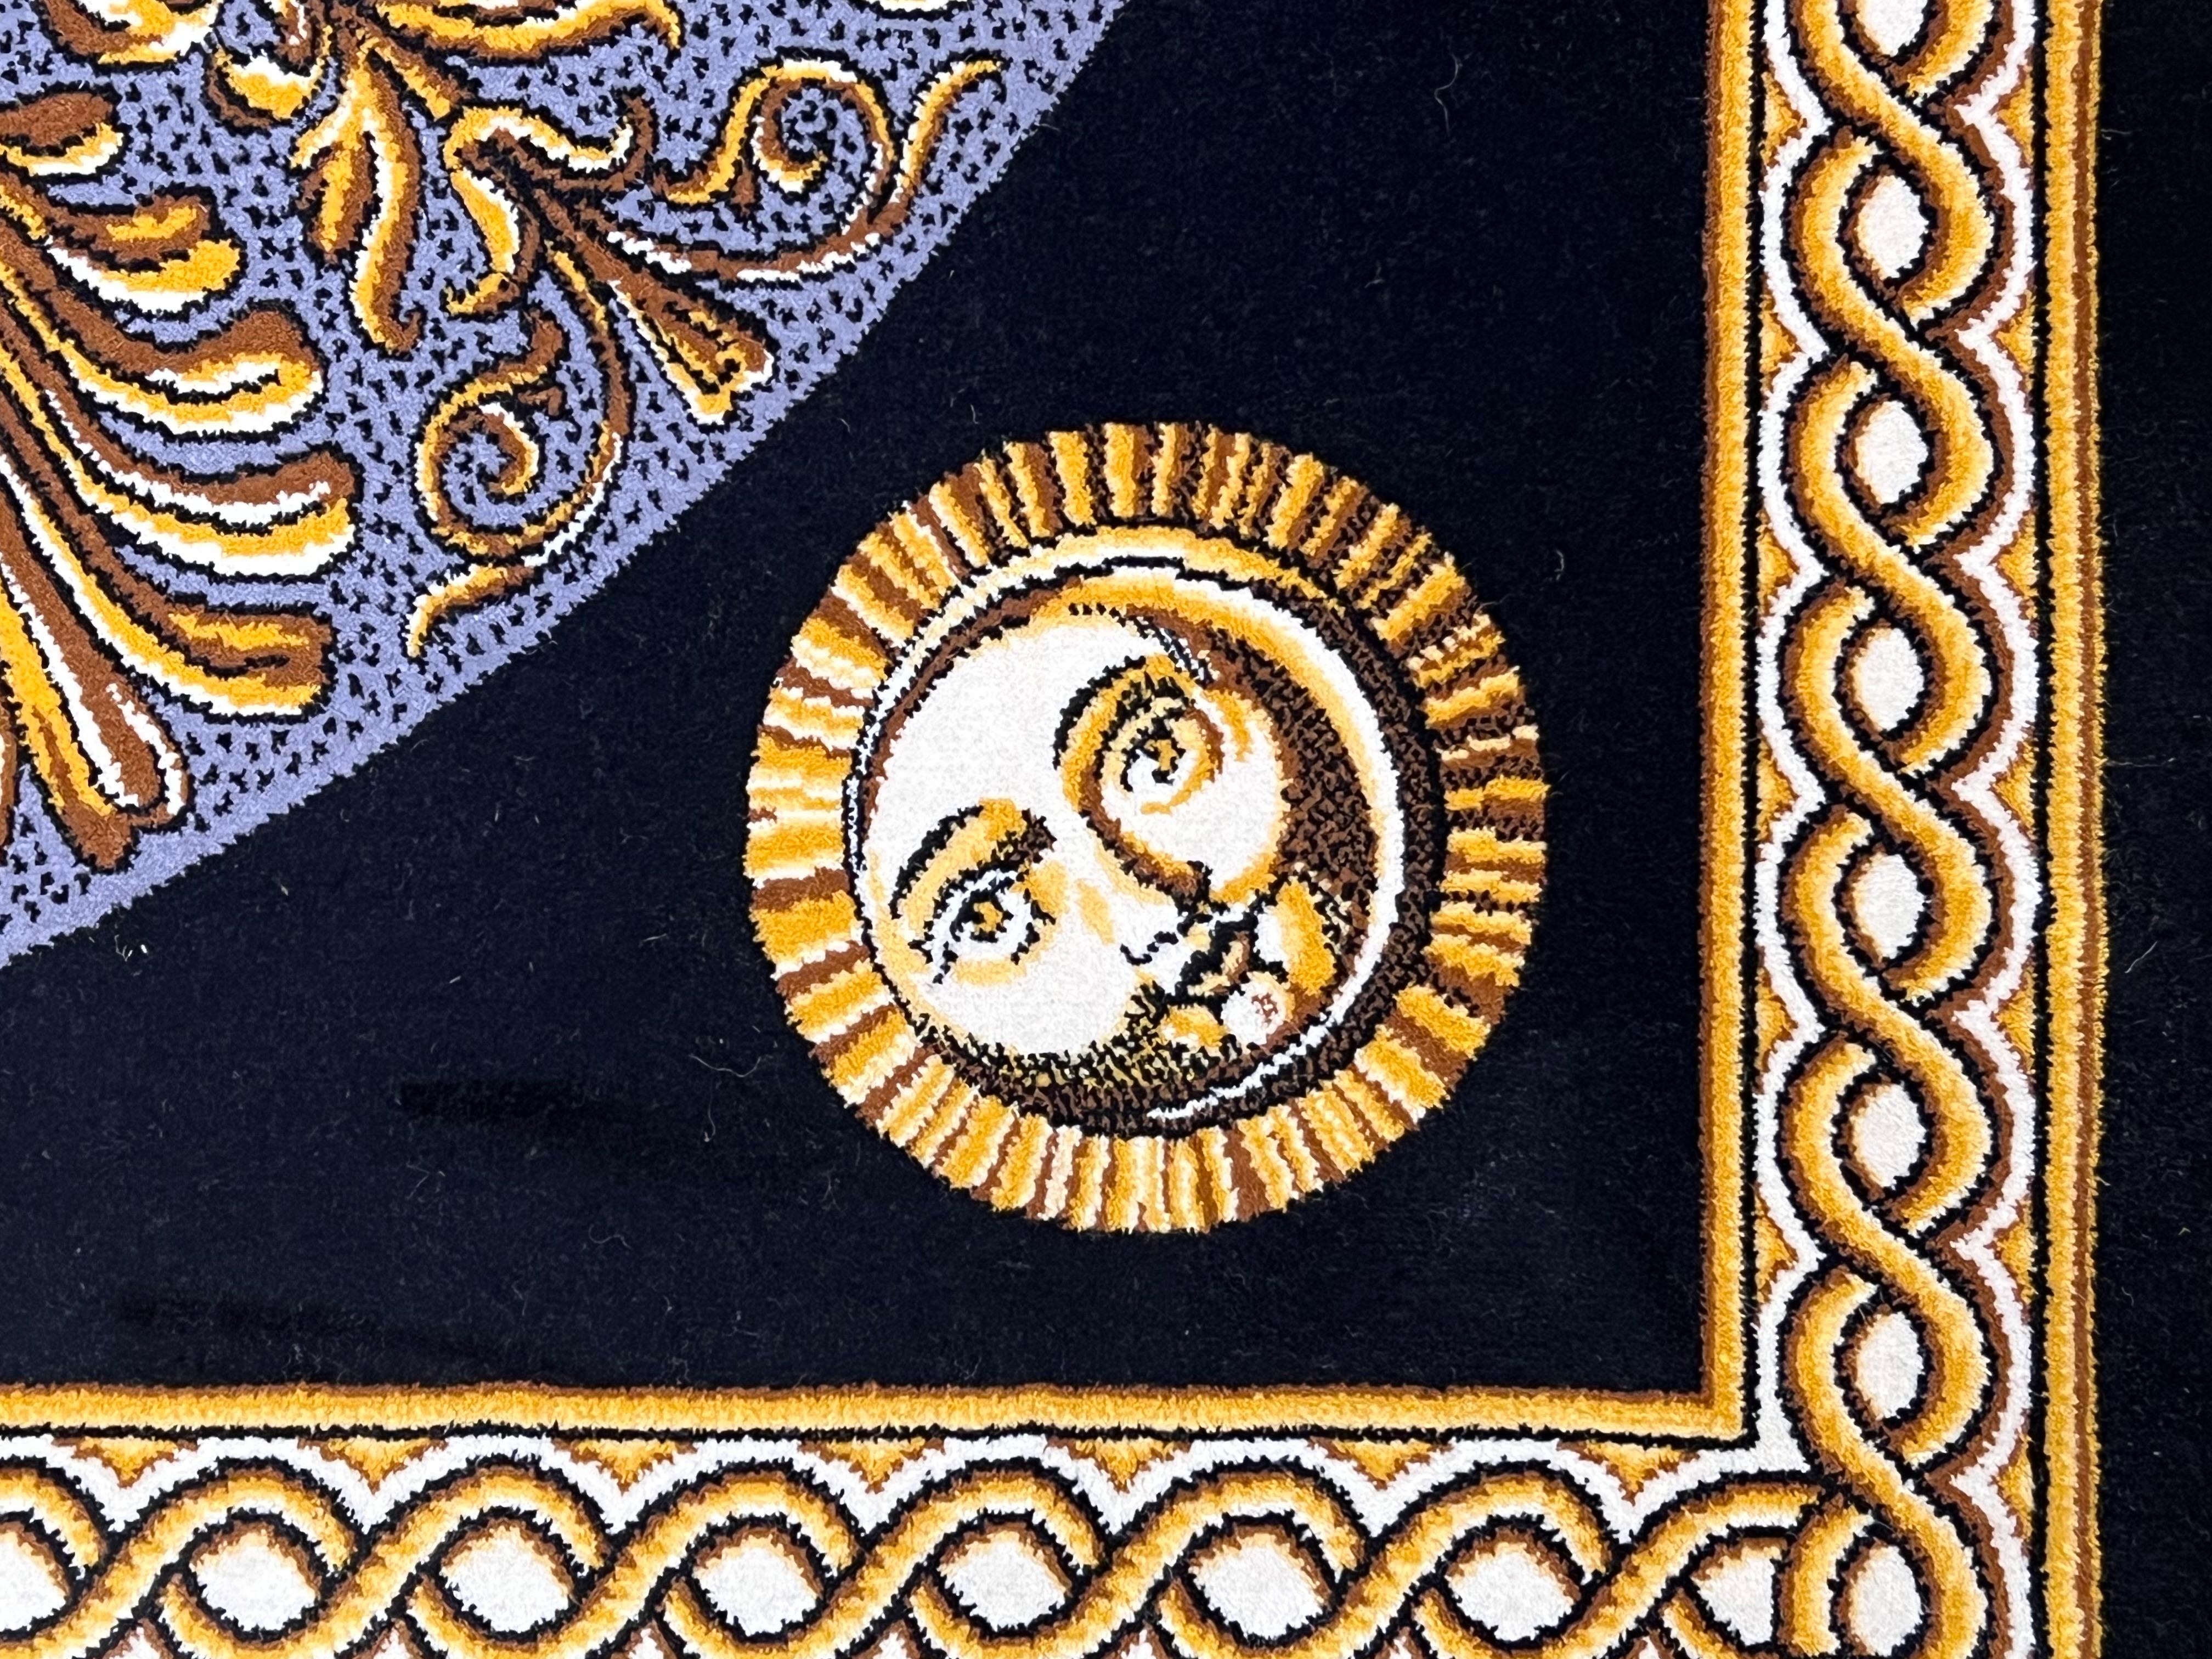 Firmato su due lati, questo tappeto Fornasetti è simbolo grafico, concesso in licenza a Louis de Poortere. Fornasetti, chiamato 